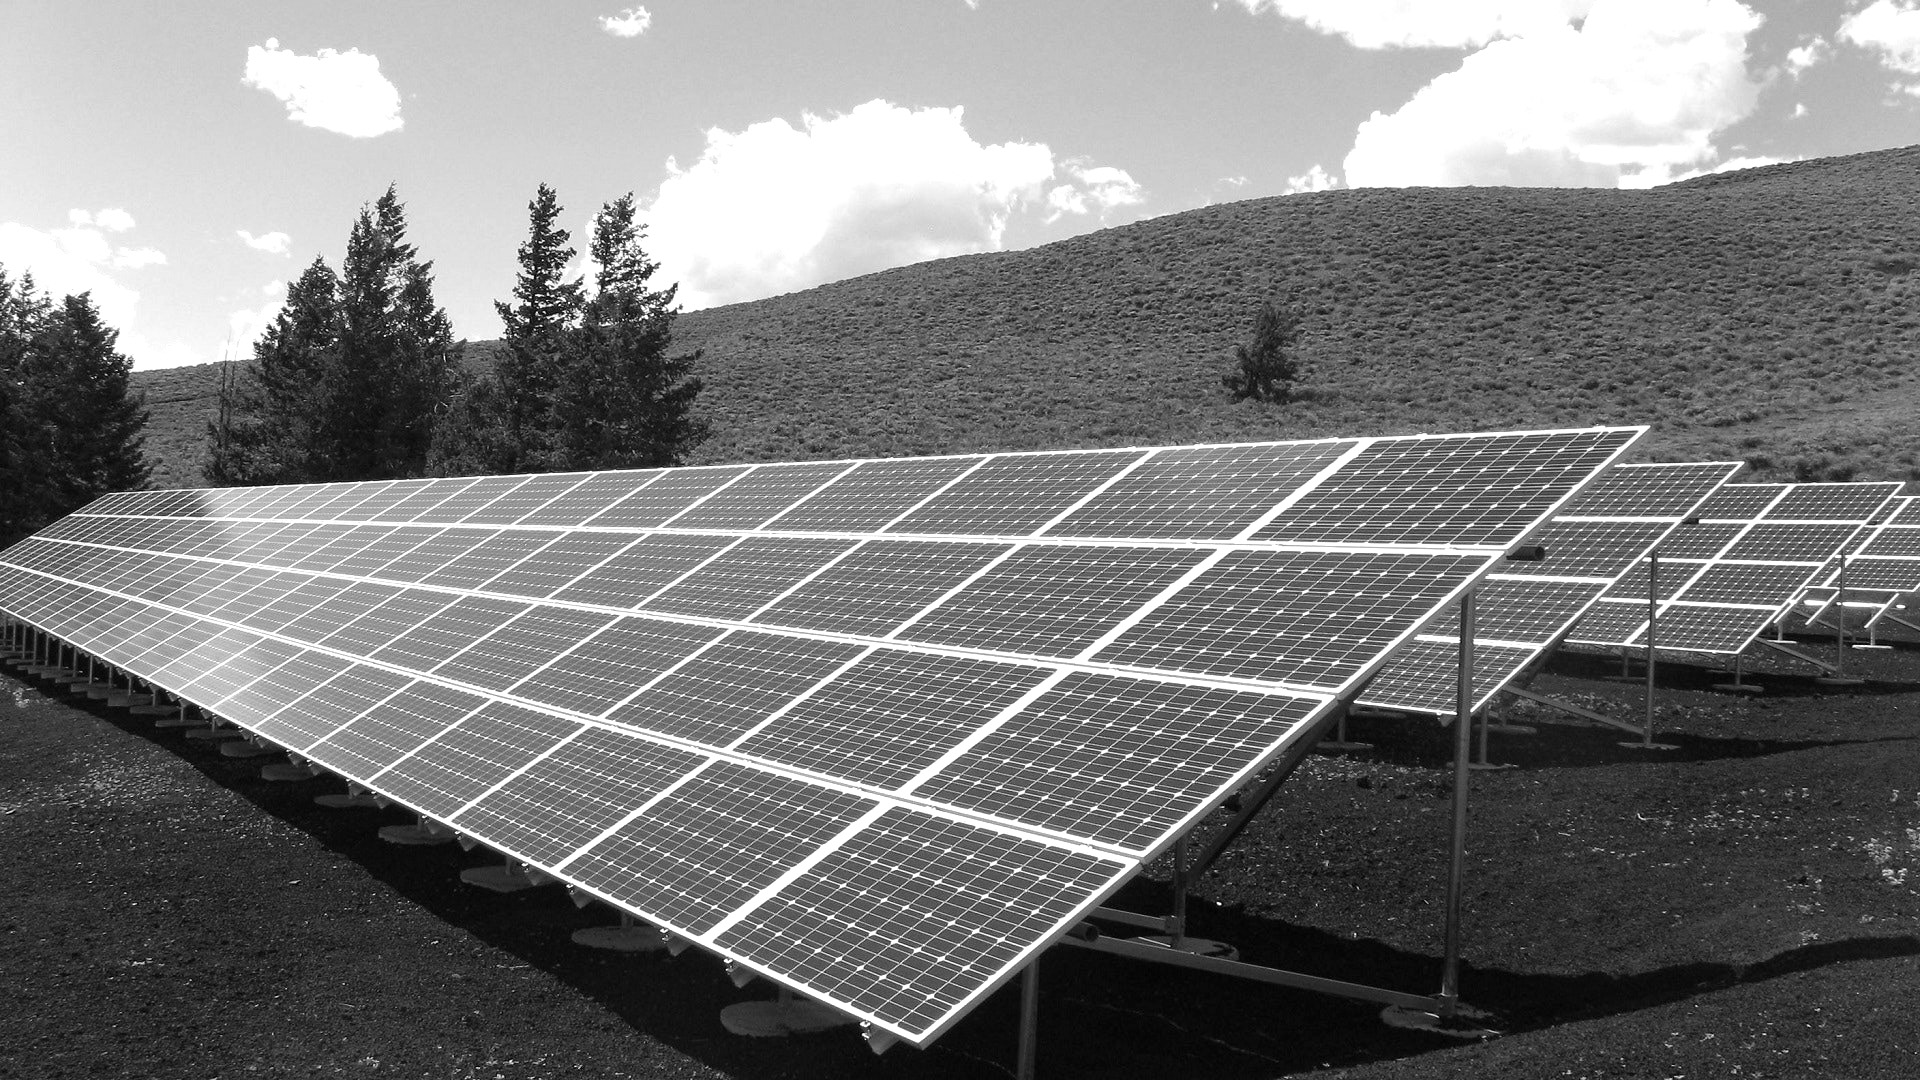 2Mo - ÉTUDES DES FLUIDES ET THERMIQUES / ÉCONOMIE DE LA CONSTRUCTION / ENVIRONNEMENT - lyon rhone-alpes - auvergne energie alternative - solaire photovoltaique